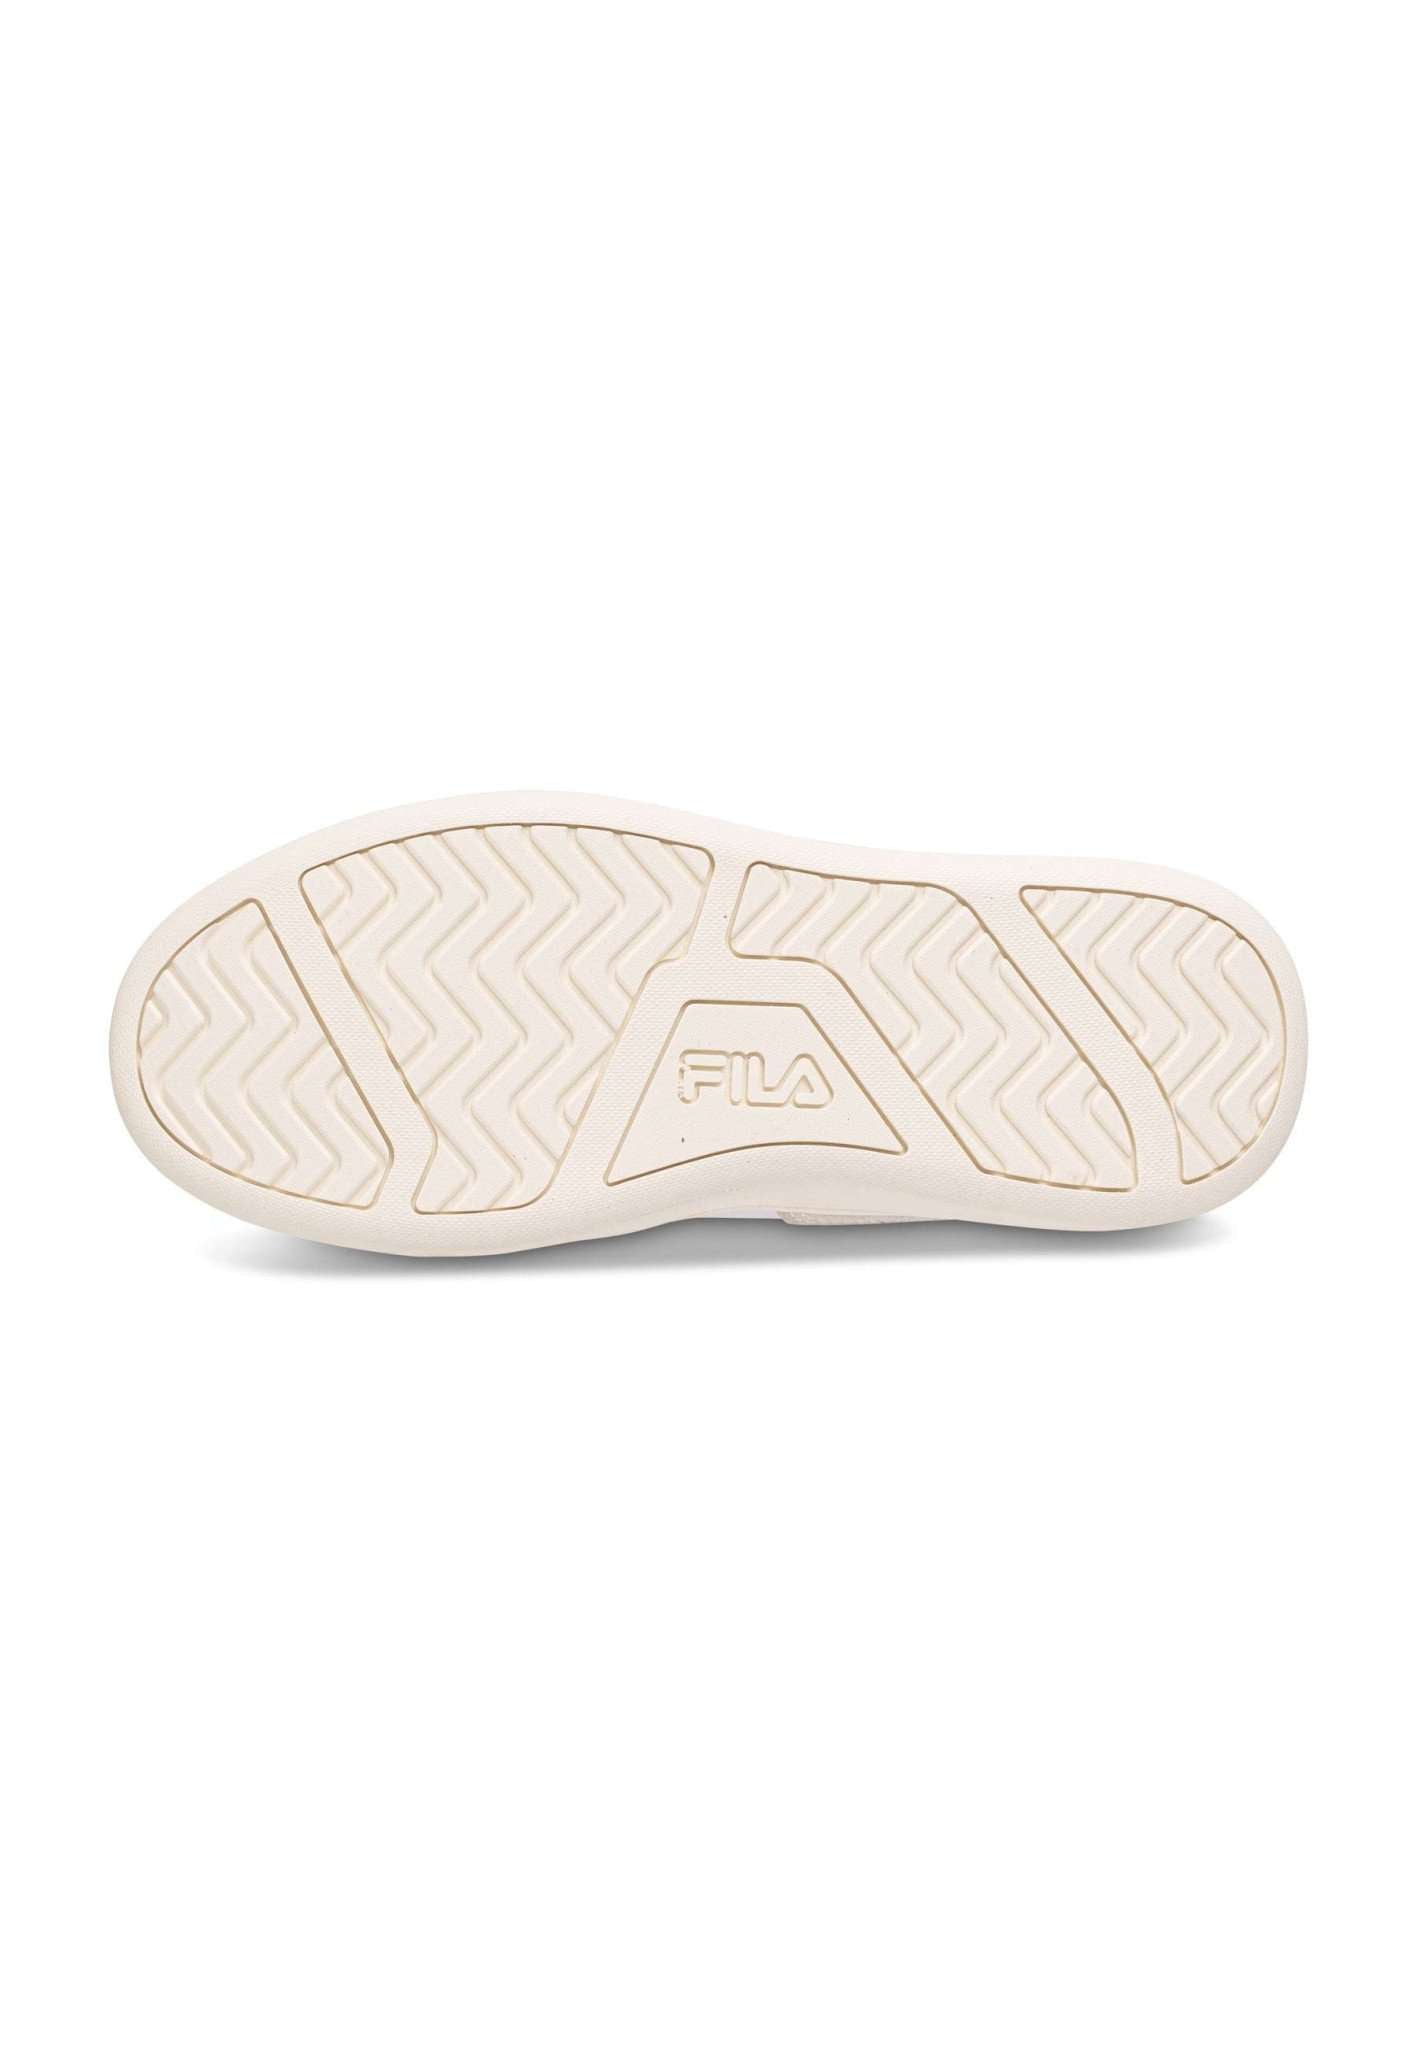 Fila Premium F Wmn in White-Gold Sneakers Fila   